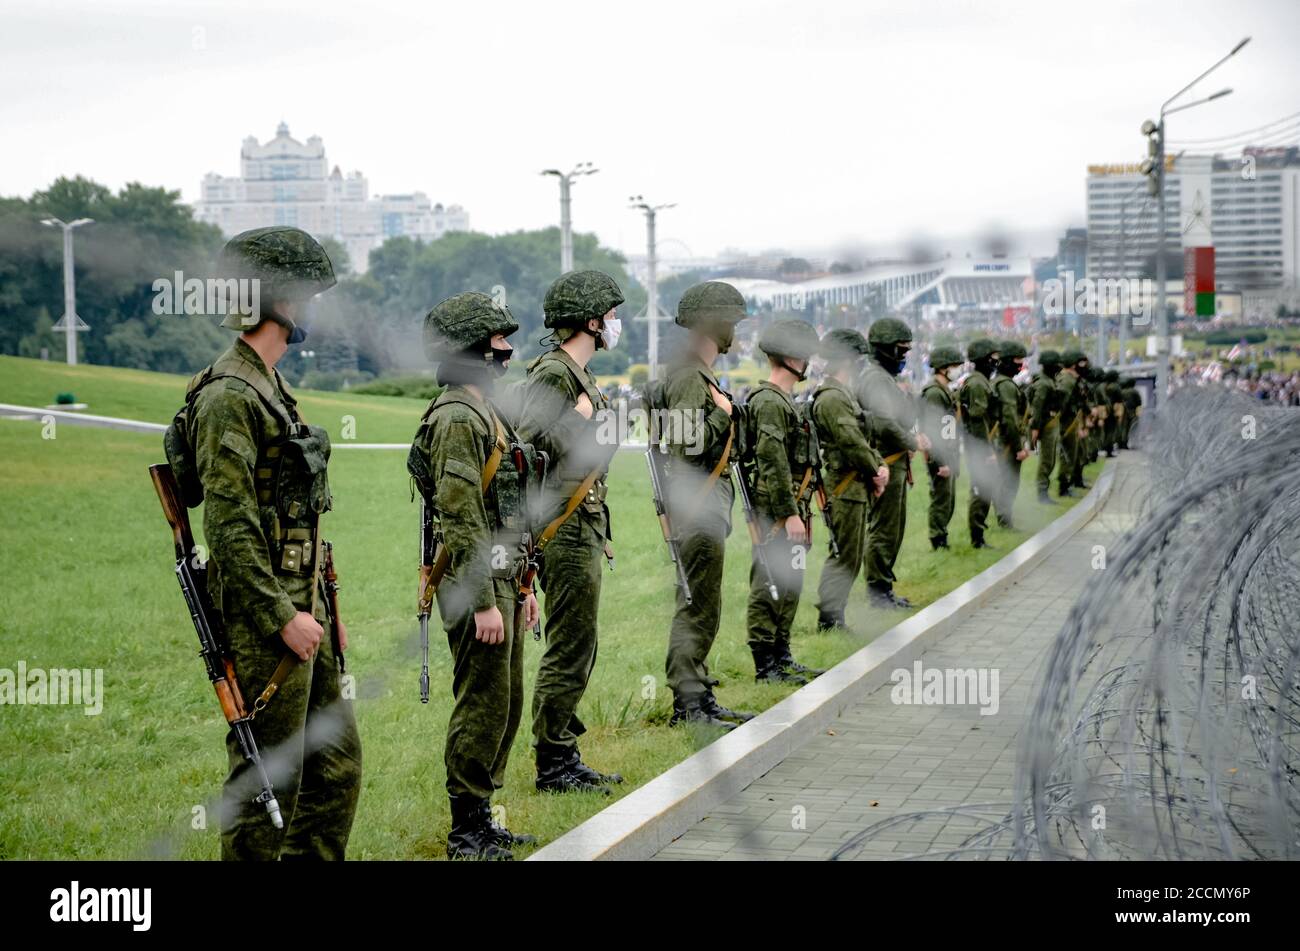 Minsk, Bielorrusia - 23 de agosto de 2020: El pueblo bielorruso participa en protestas pacíficas contra unidades especiales de policía y soldados después de la elección presidencial Foto de stock